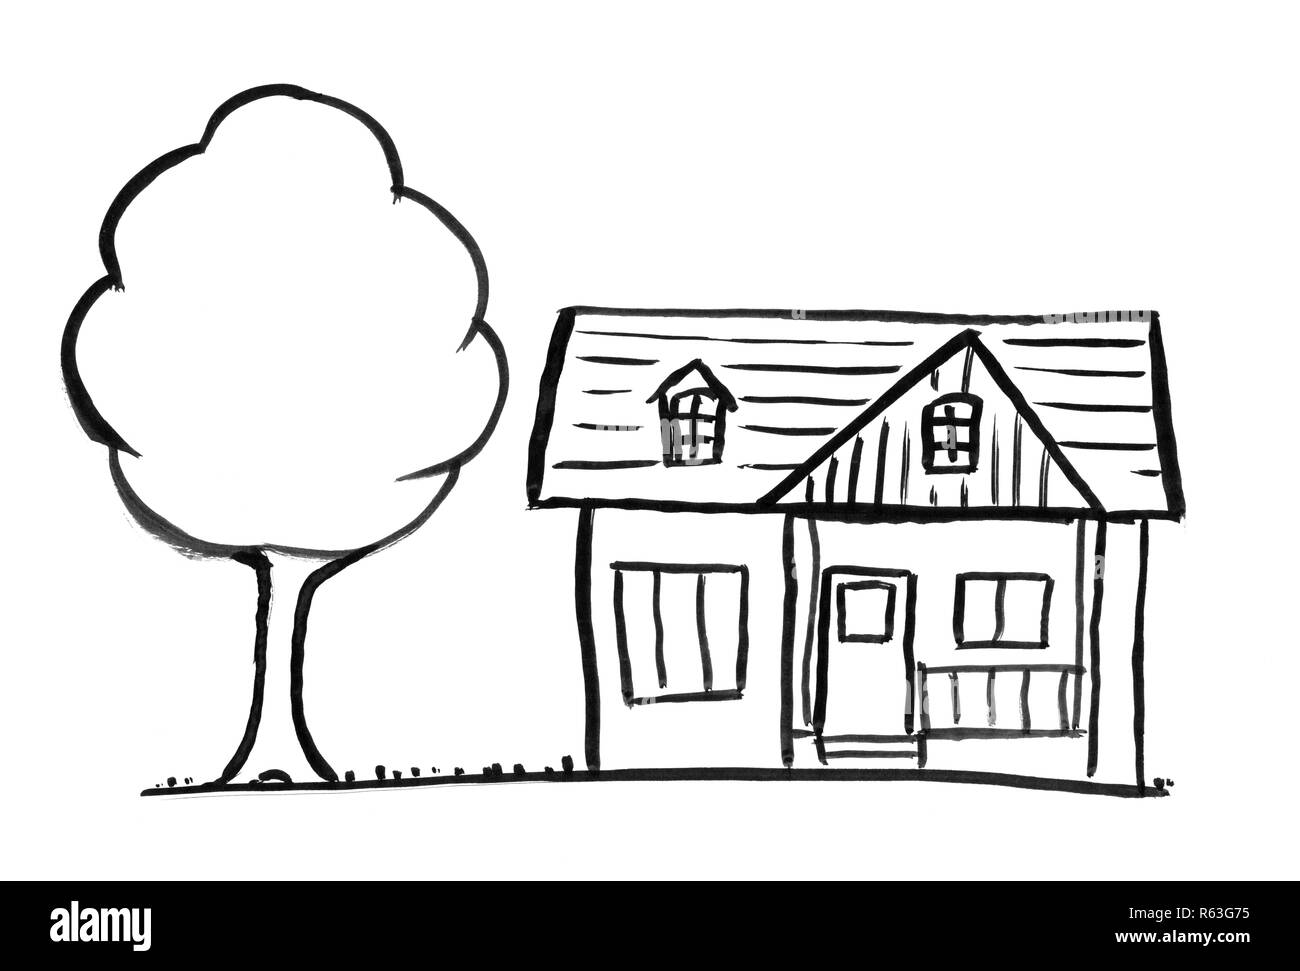 Schwarze Tinte Grunge Hand Zeichnung der romantischen Haus und Baum Stockfoto